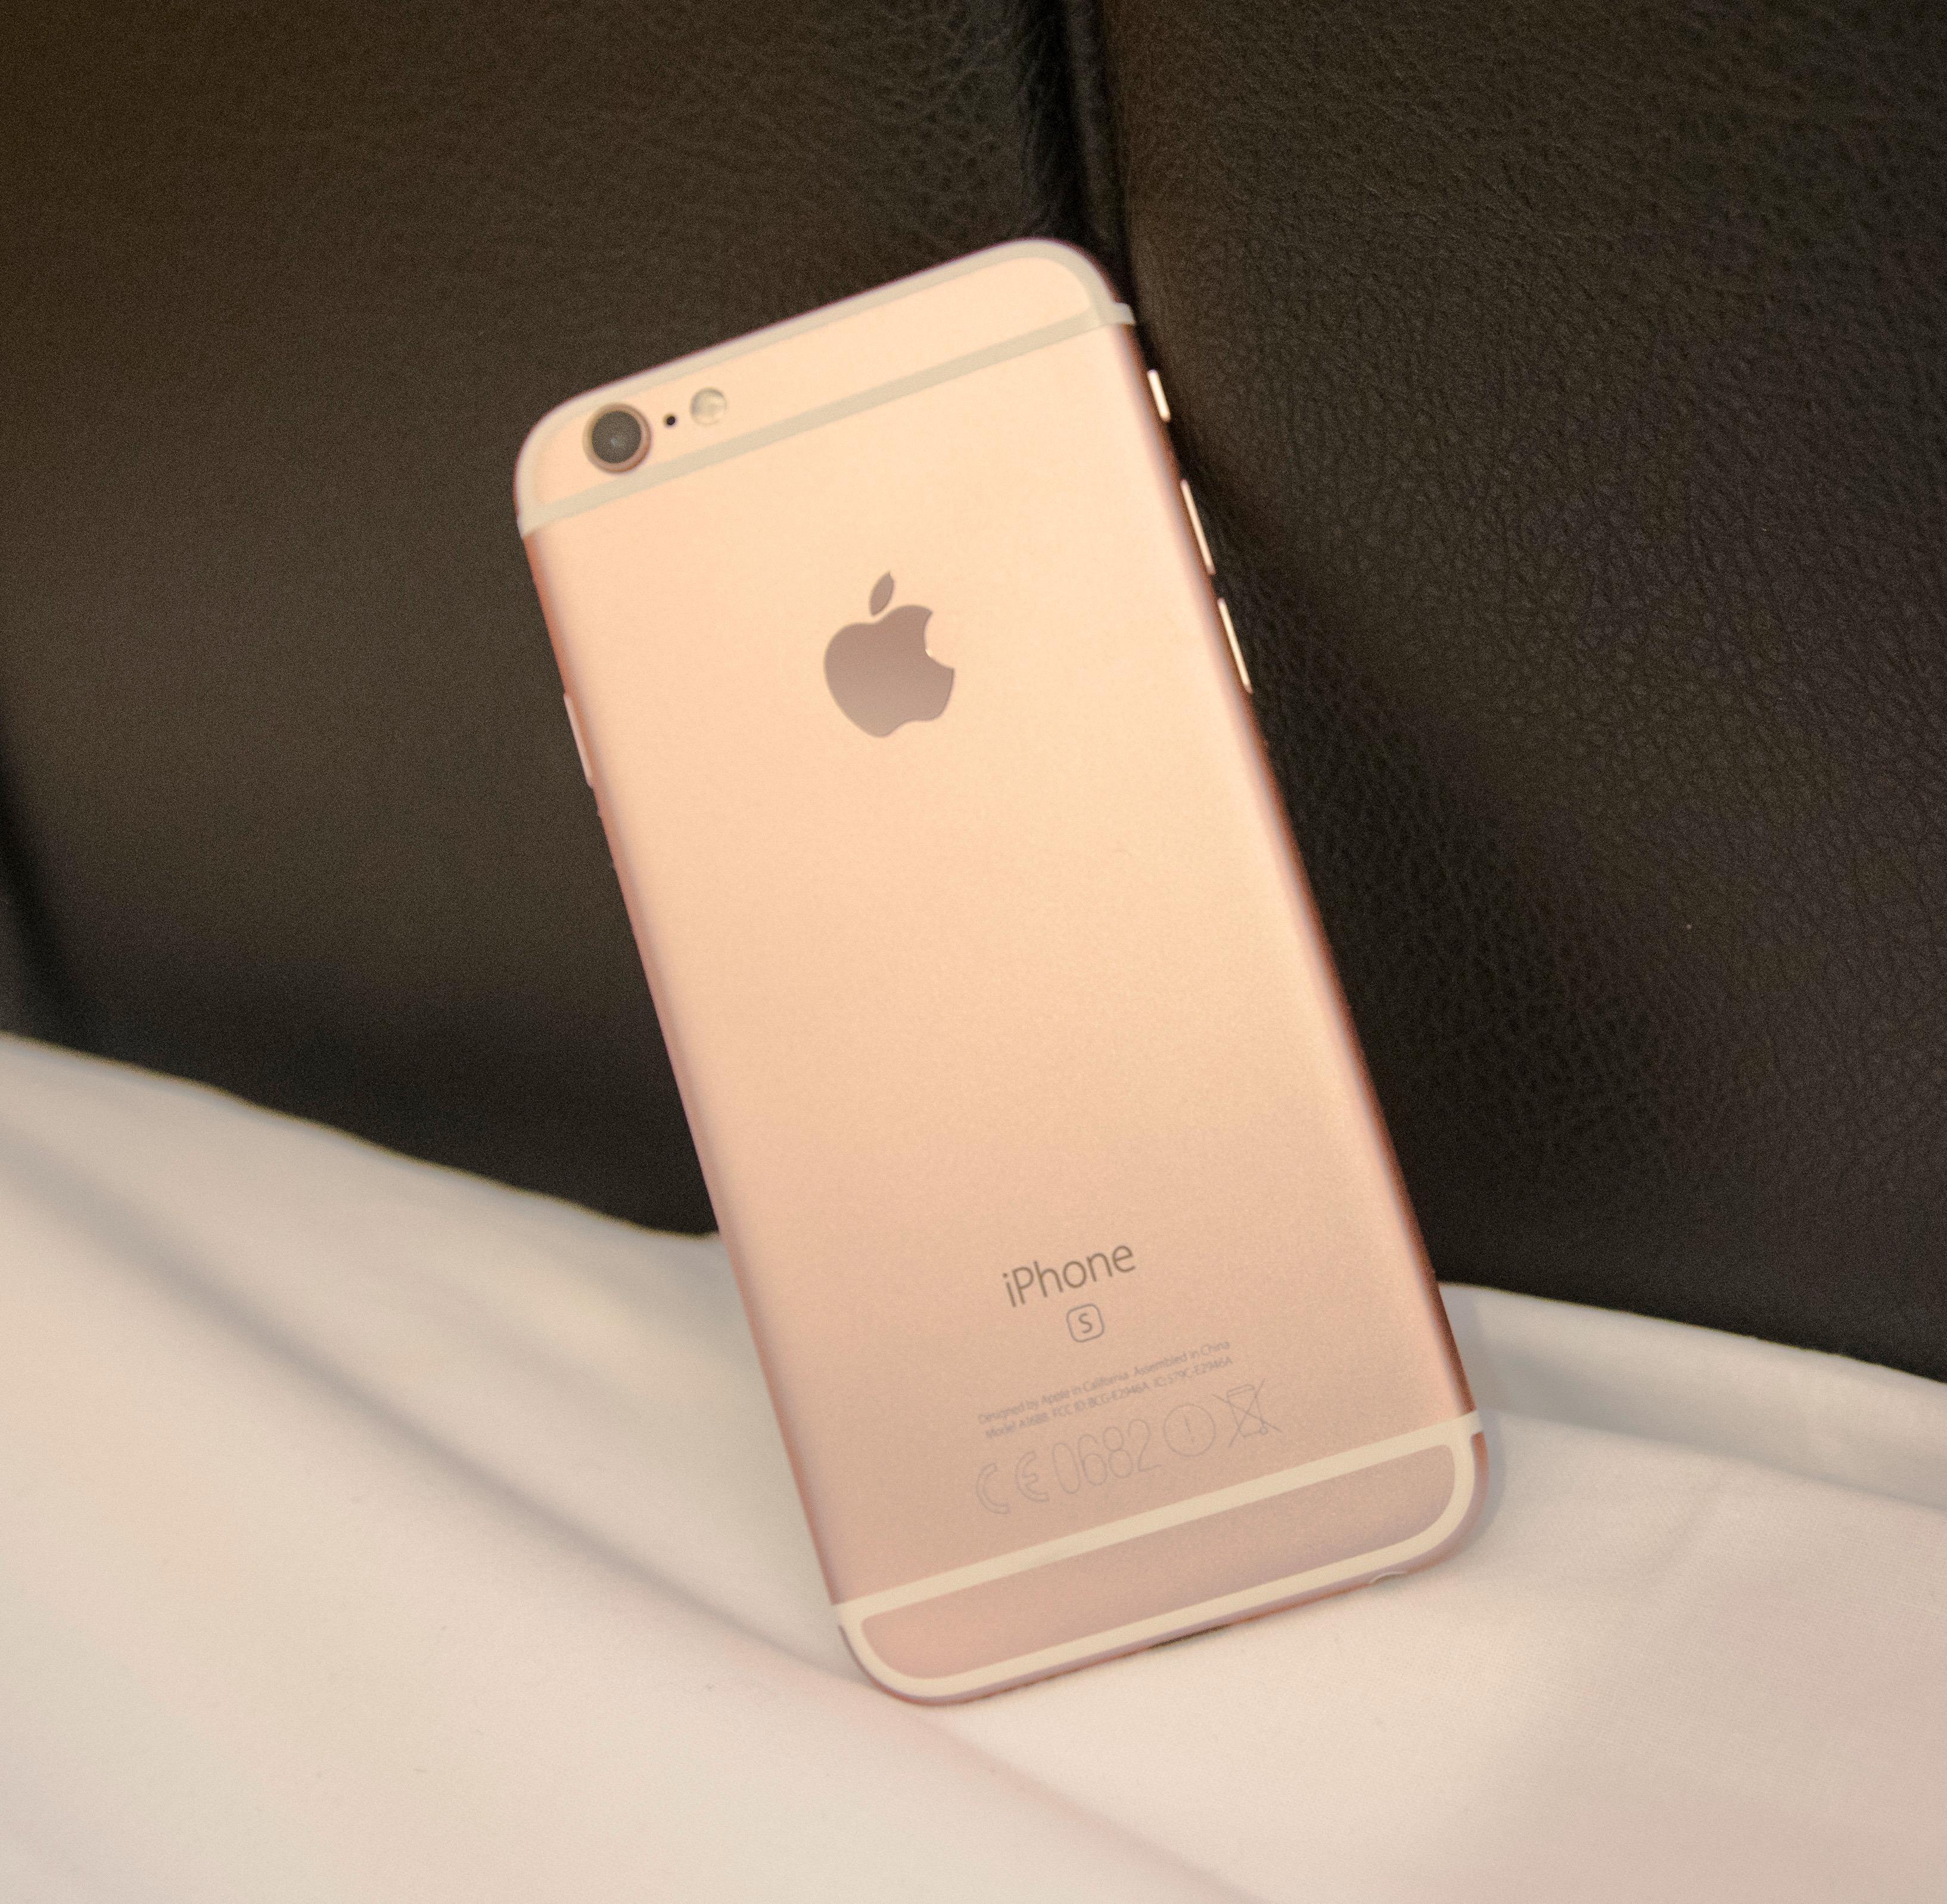 Som tidligere modeller er iPhone 6S velbygget og pen å se til. Nytt av året er at den er tilgjengelig i en slags rosa gullfarge. Foto: Finn Jarle Kvalheim, Tek.no